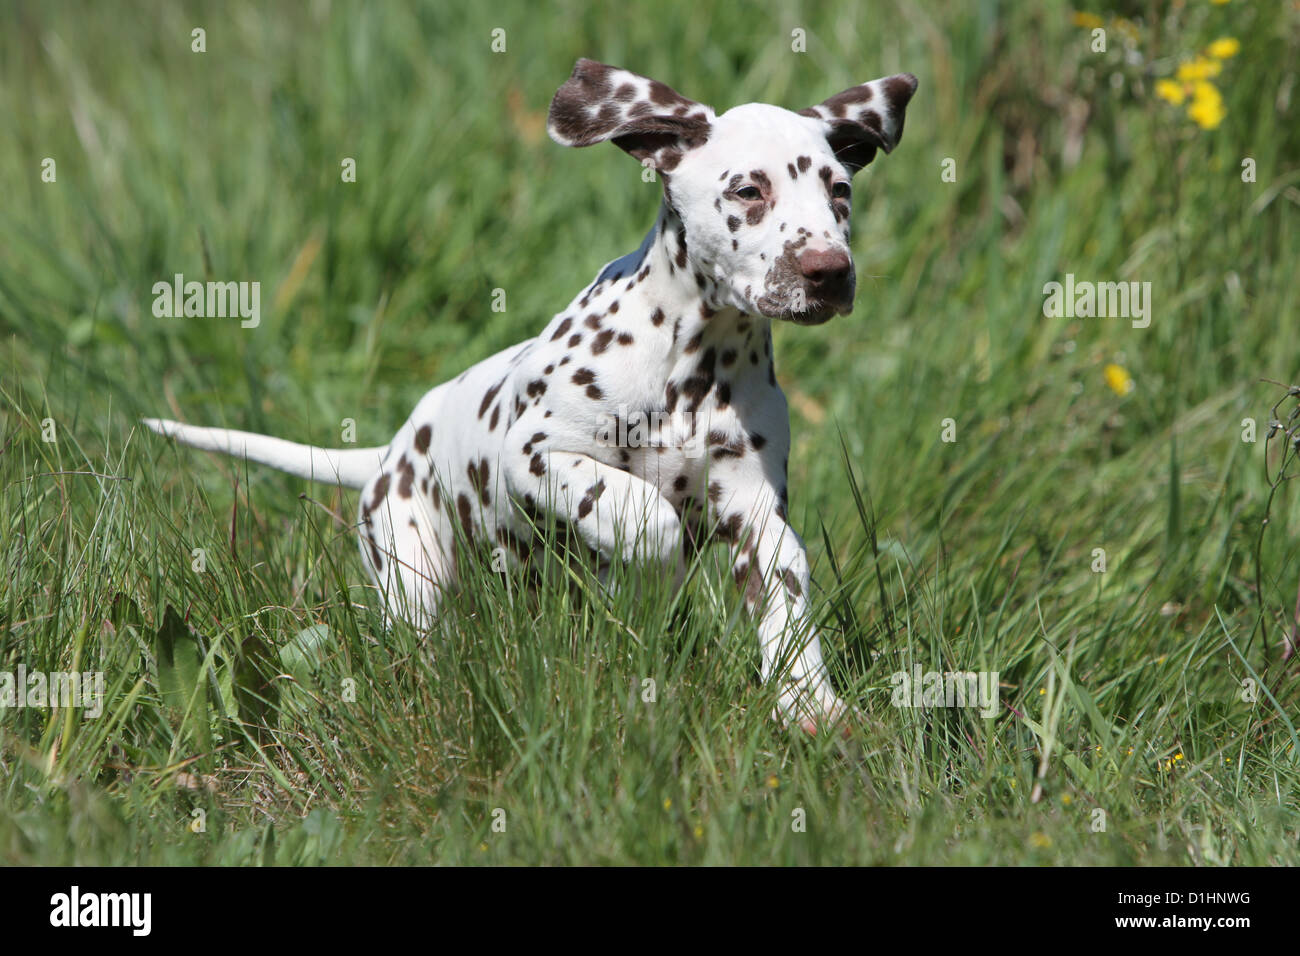 Cane dalmata Dalmatiner / / Dalmatien puppy in esecuzione in un prato Foto Stock